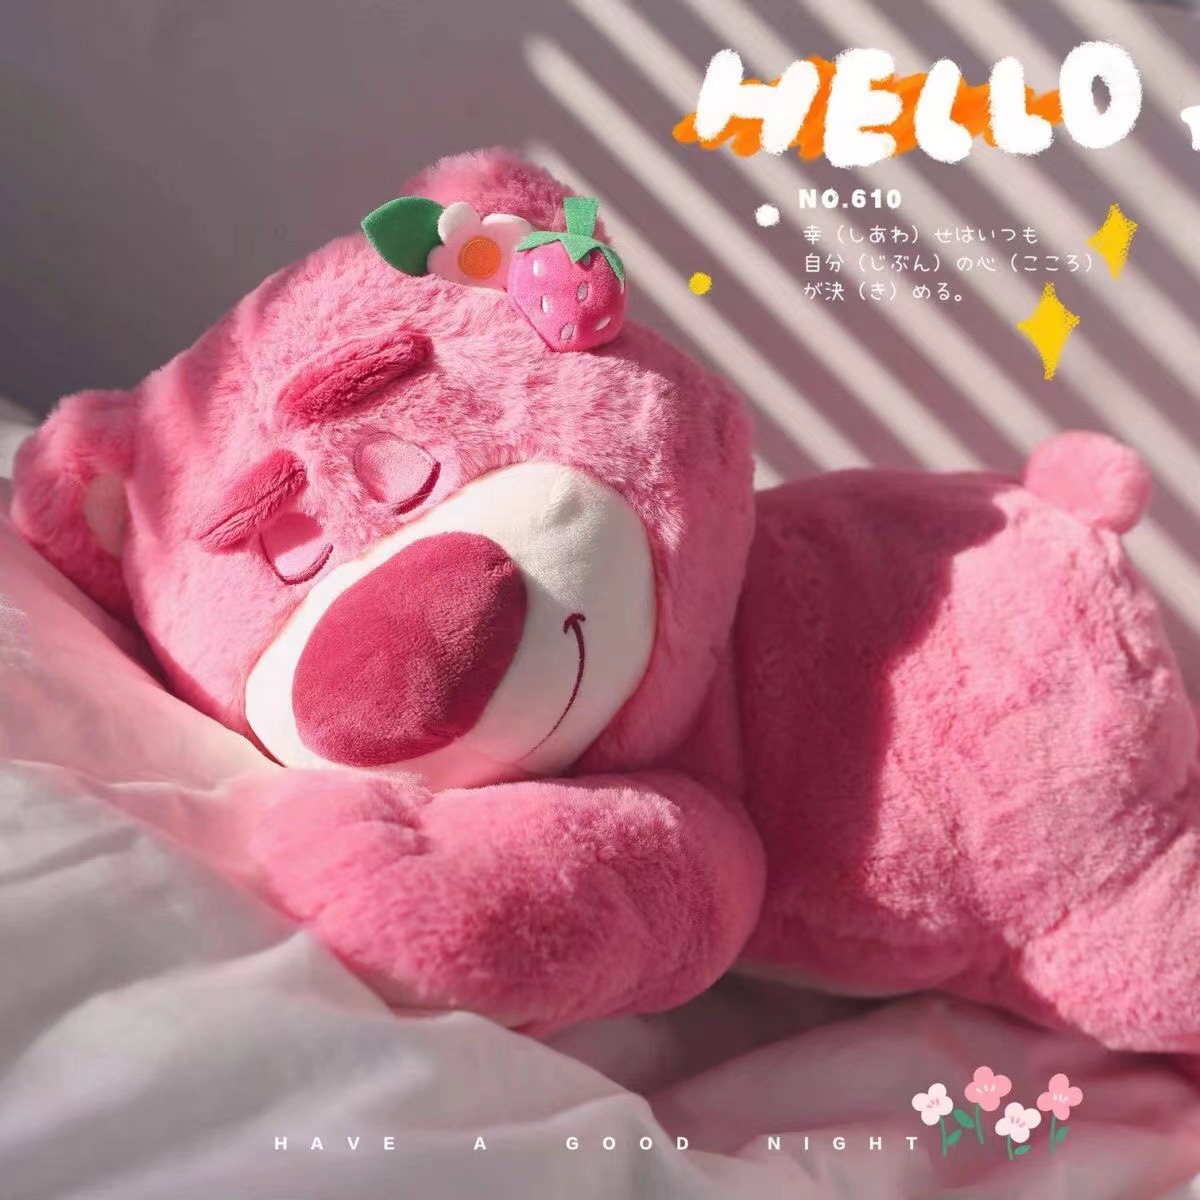 Gấu bông (stuffed bear): Gấu bông - một trong những món đồ chơi được yêu thích nhất trên thế giới. Hình ảnh một chiếc gấu bông xinh xắn sẽ mang lại cho bạn cảm giác ấm áp và yêu thương. Đây là một món quà tuyệt vời dành cho các em nhỏ của bạn.